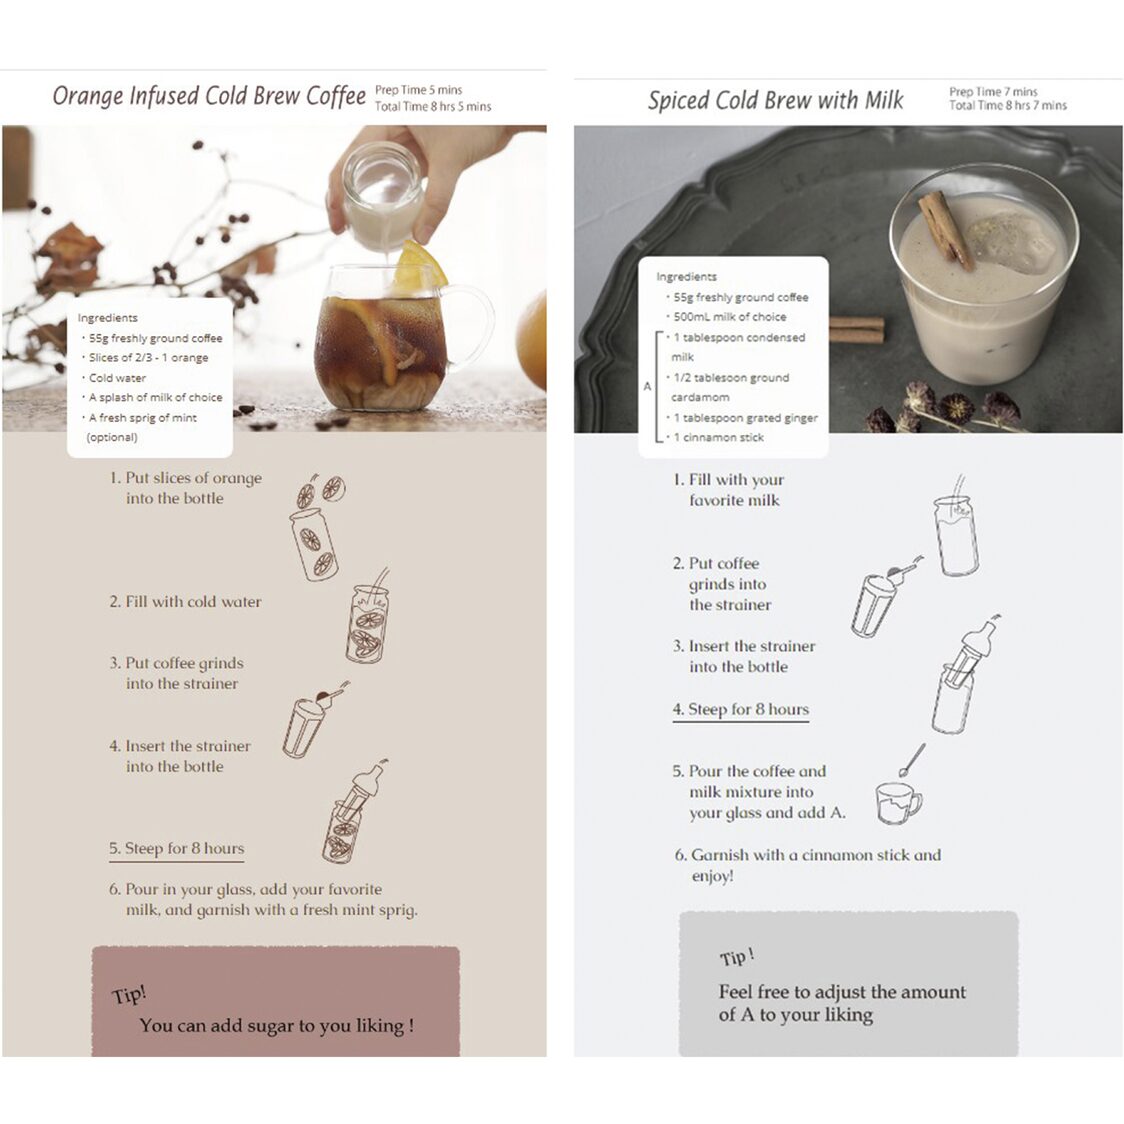 FIC-70 Cold Brew Coffee Basic Recipe - HARIO CO.,LTD.